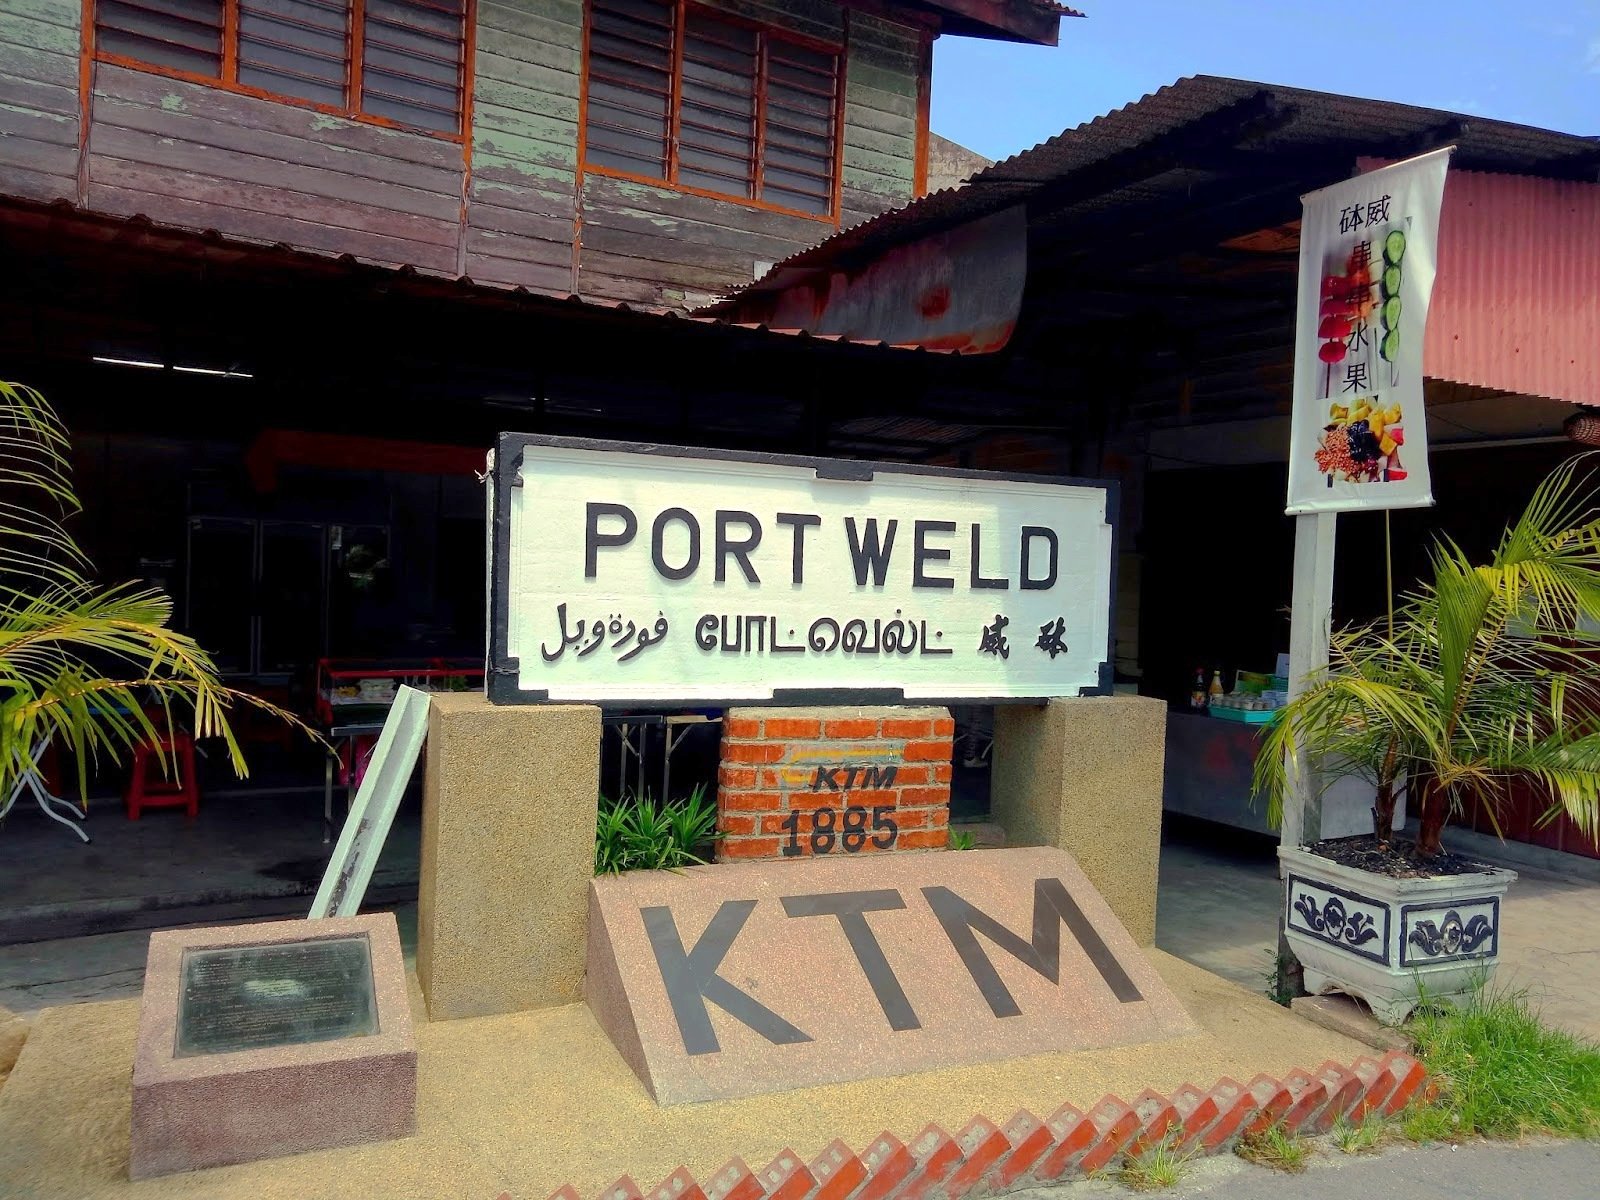 英殖民把霹雳十八丁易名Port Weld，火车站中文名为“砵威”，现已恢复原名。